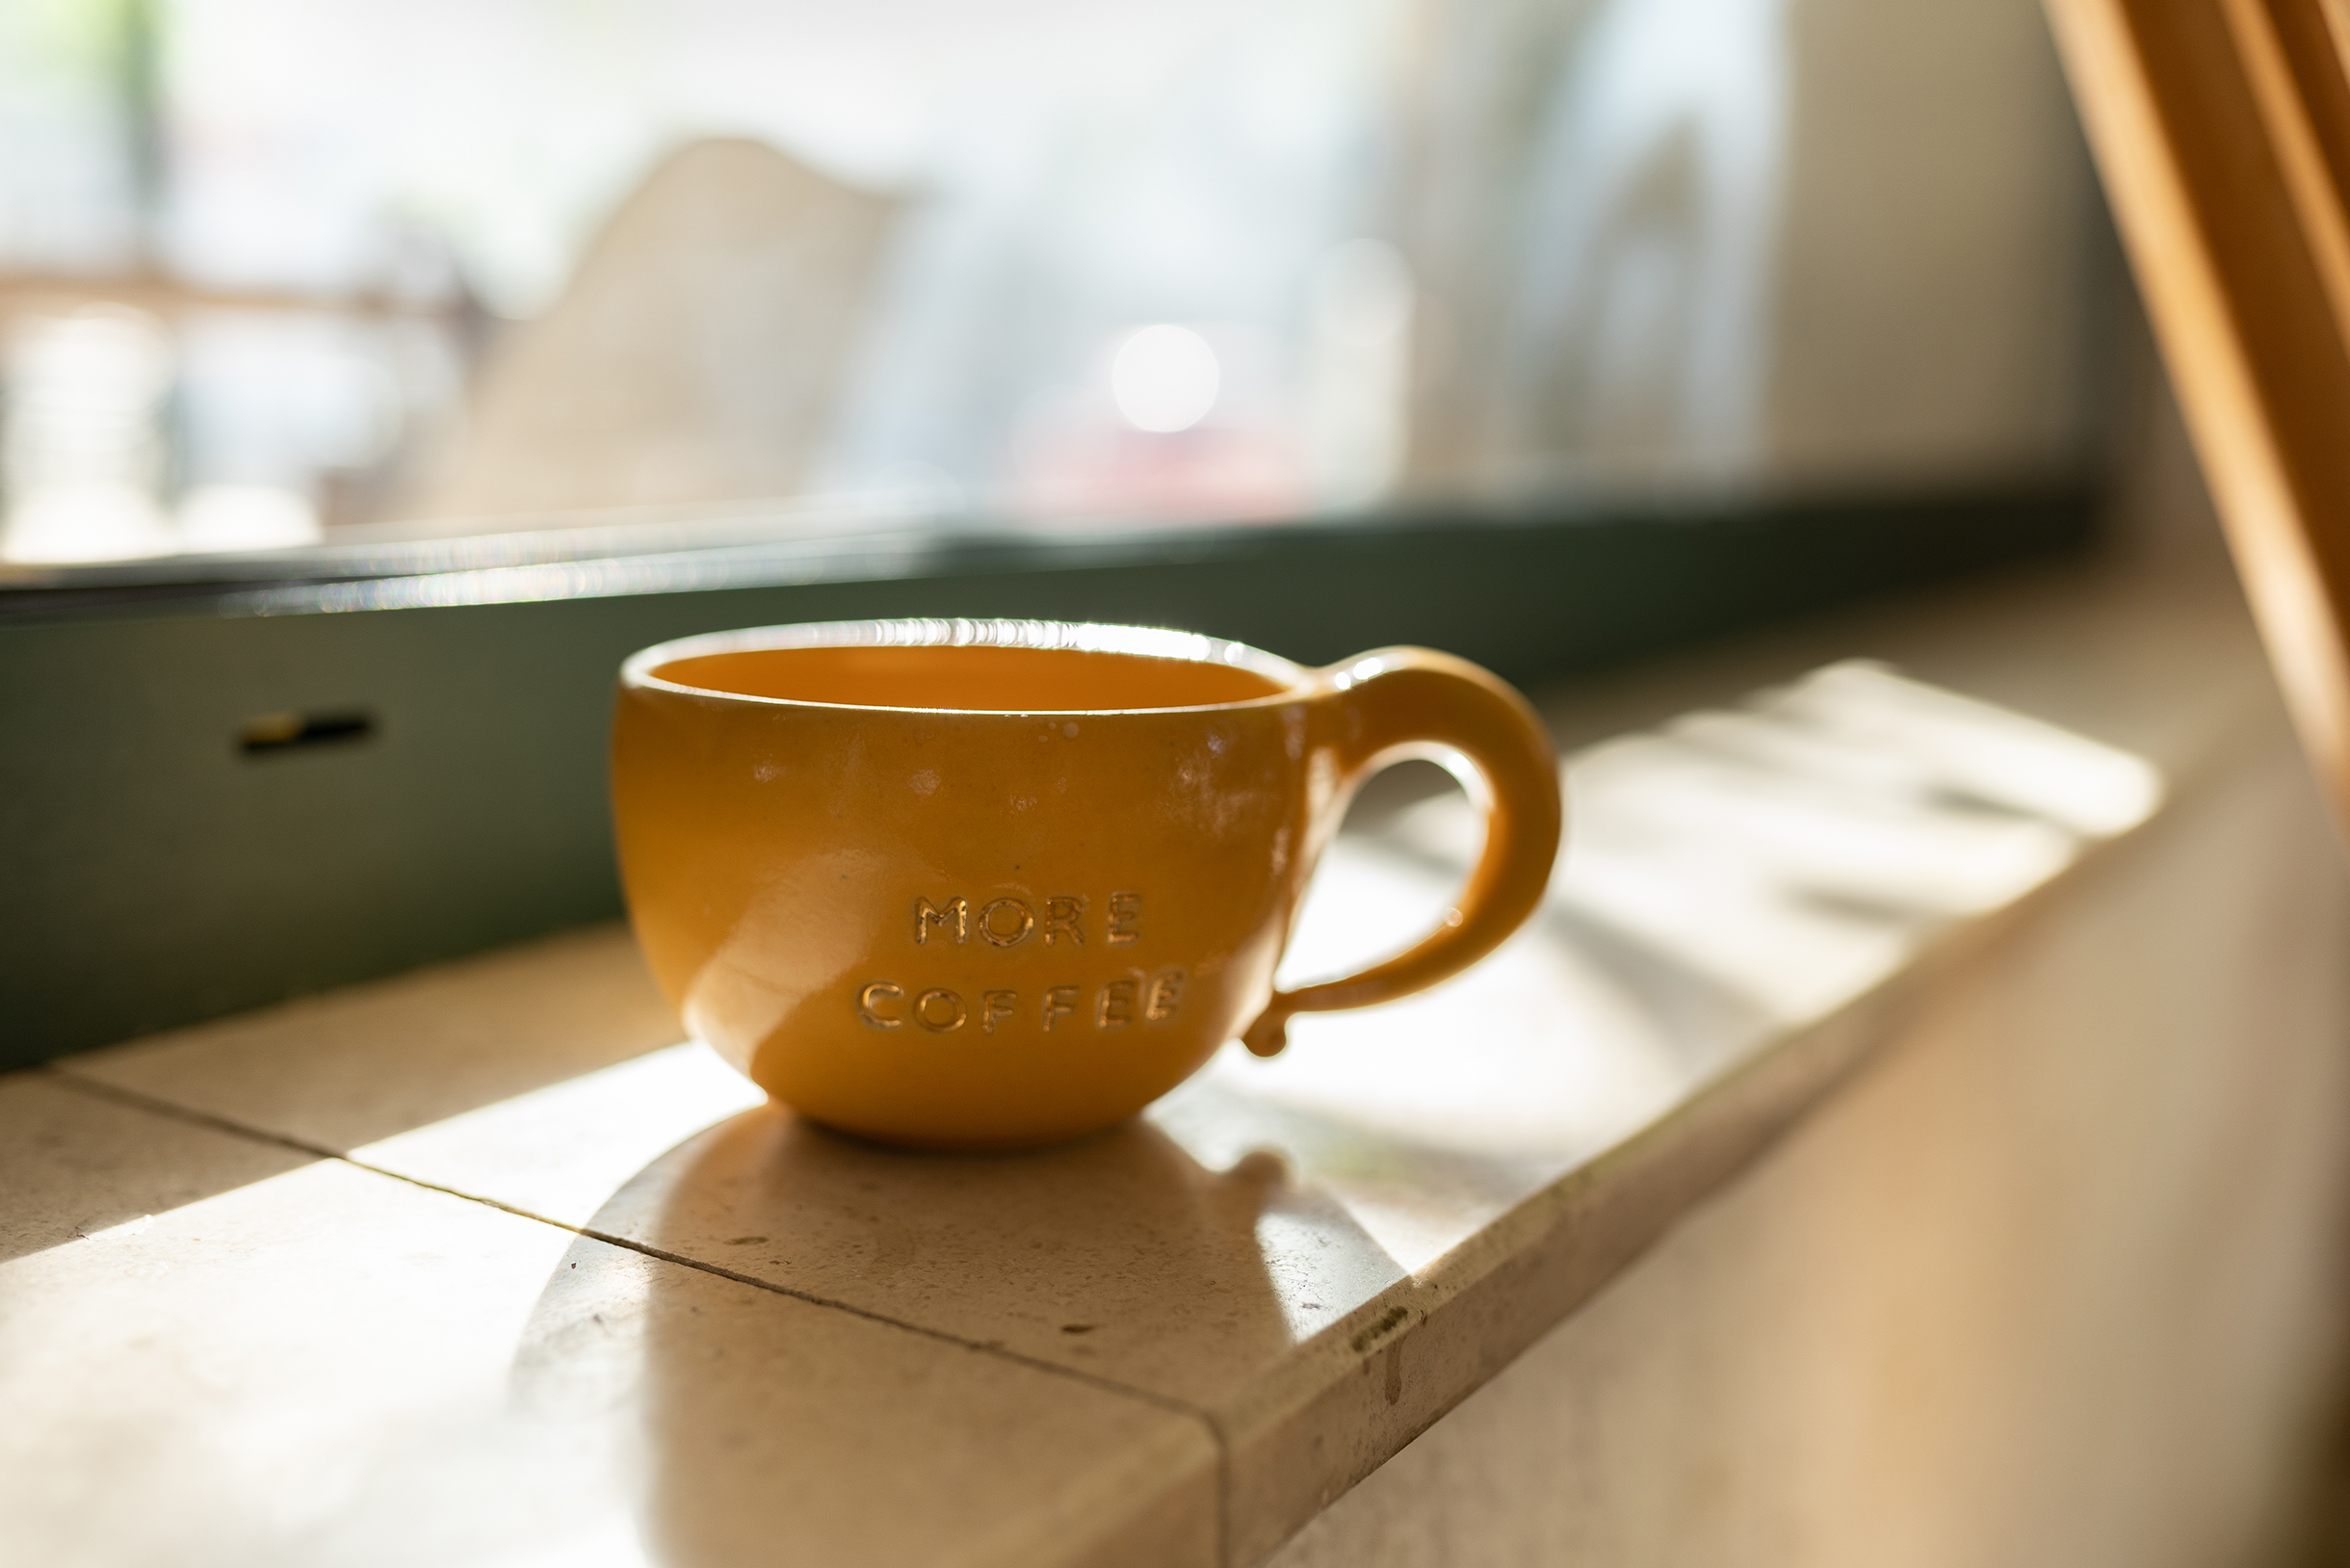 10 брендированных чашек с названием кофейни сделали под заказ в гончарной мастерской нашей знакомой